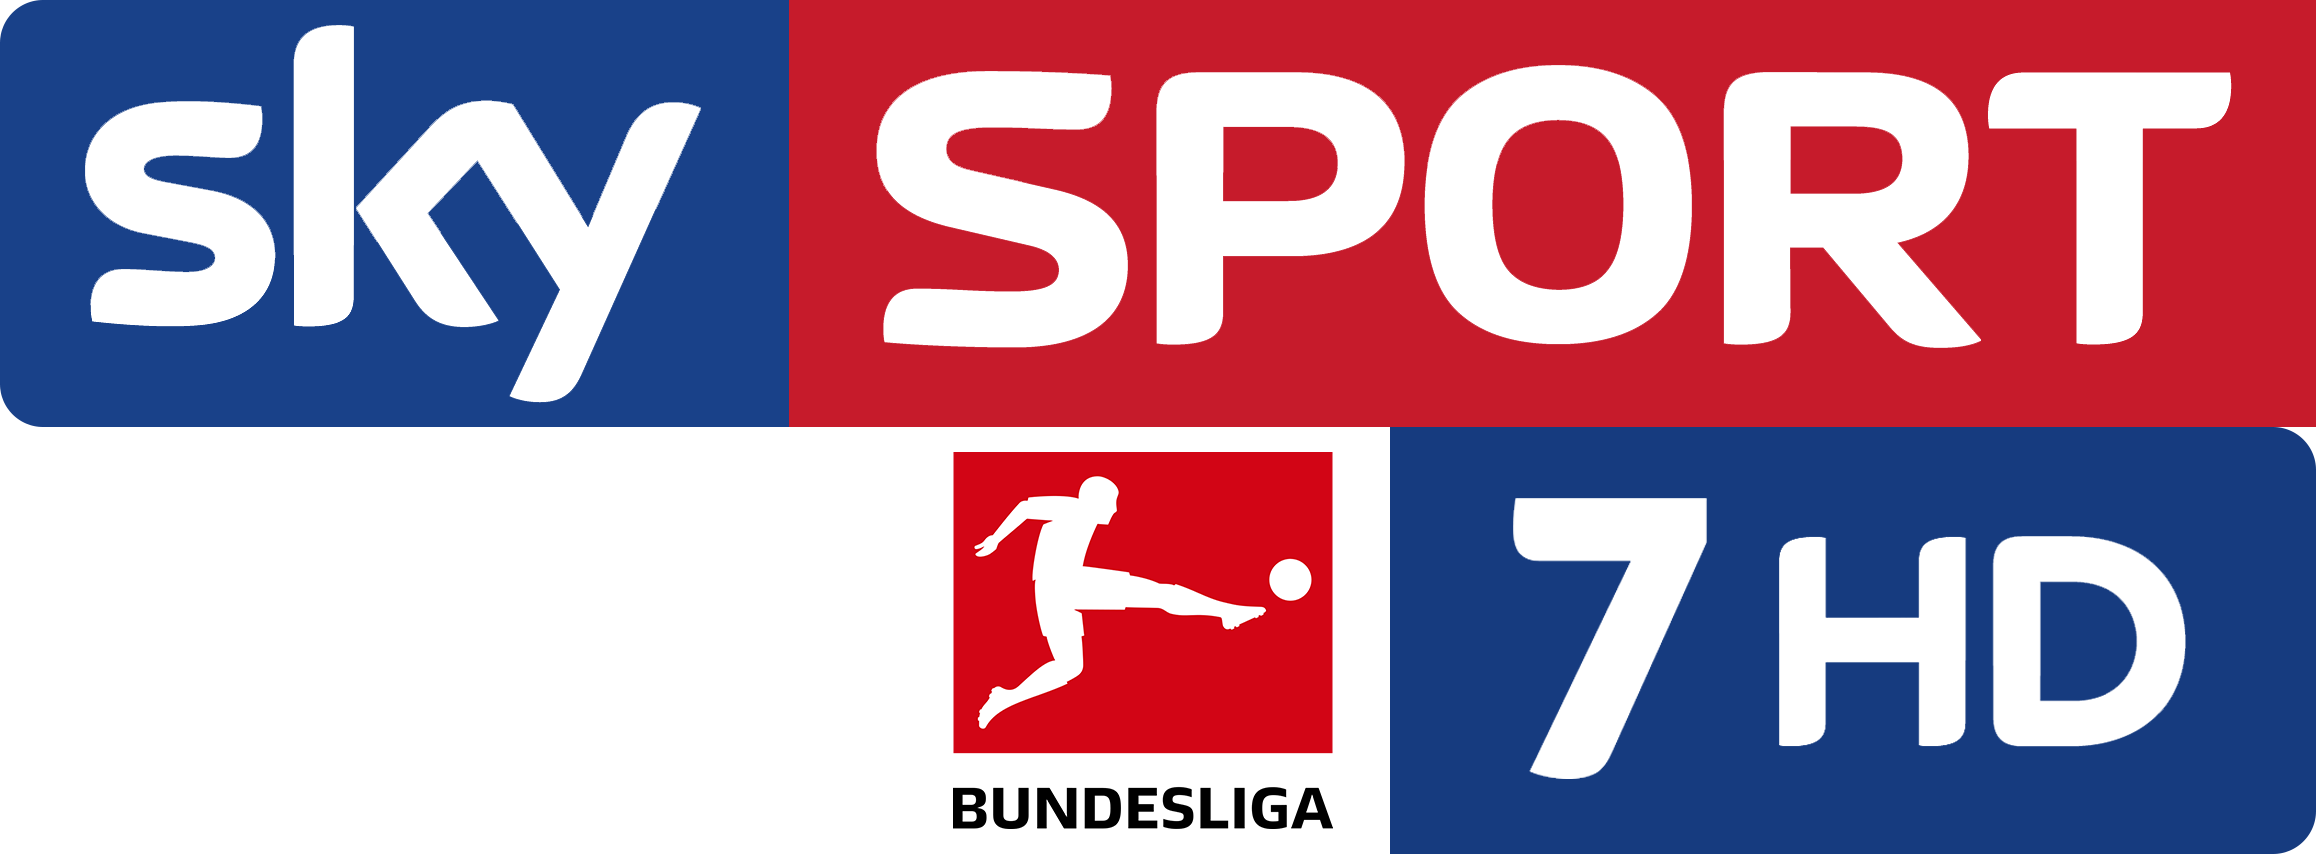 Sky Sport Bundesliga 7